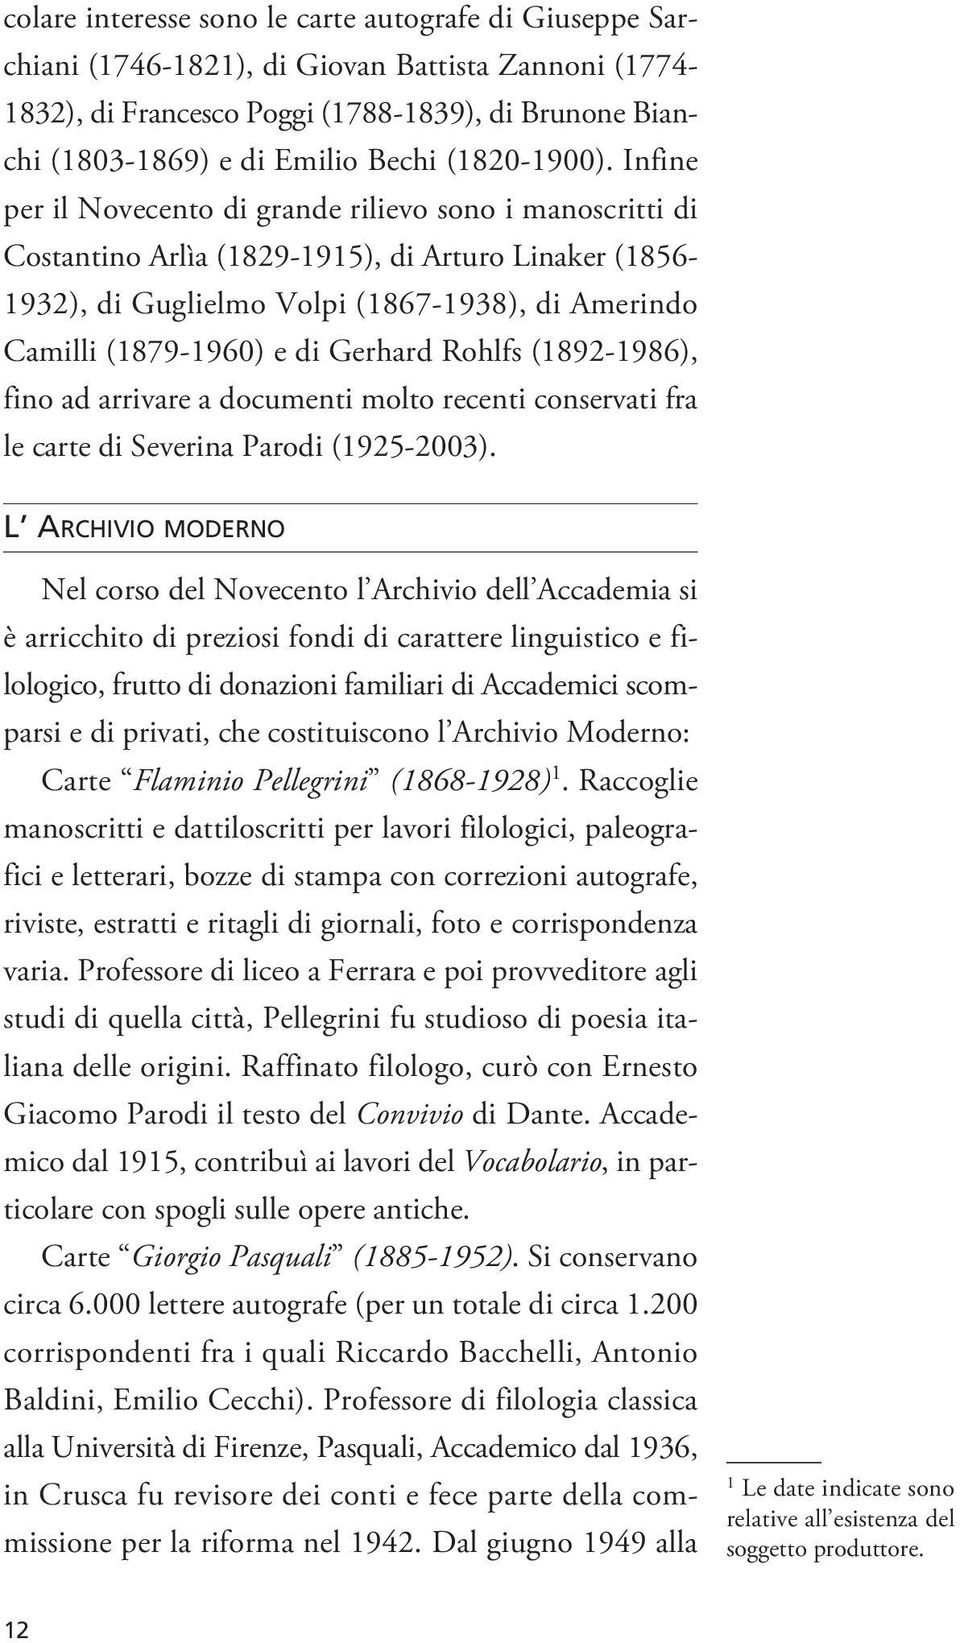 Infine per il Novecento di grande rilievo sono i manoscritti di Costantino Arlìa (1829-1915), di Arturo Linaker (1856-1932), di Guglielmo Volpi (1867-1938), di Amerindo Camilli (1879-1960) e di